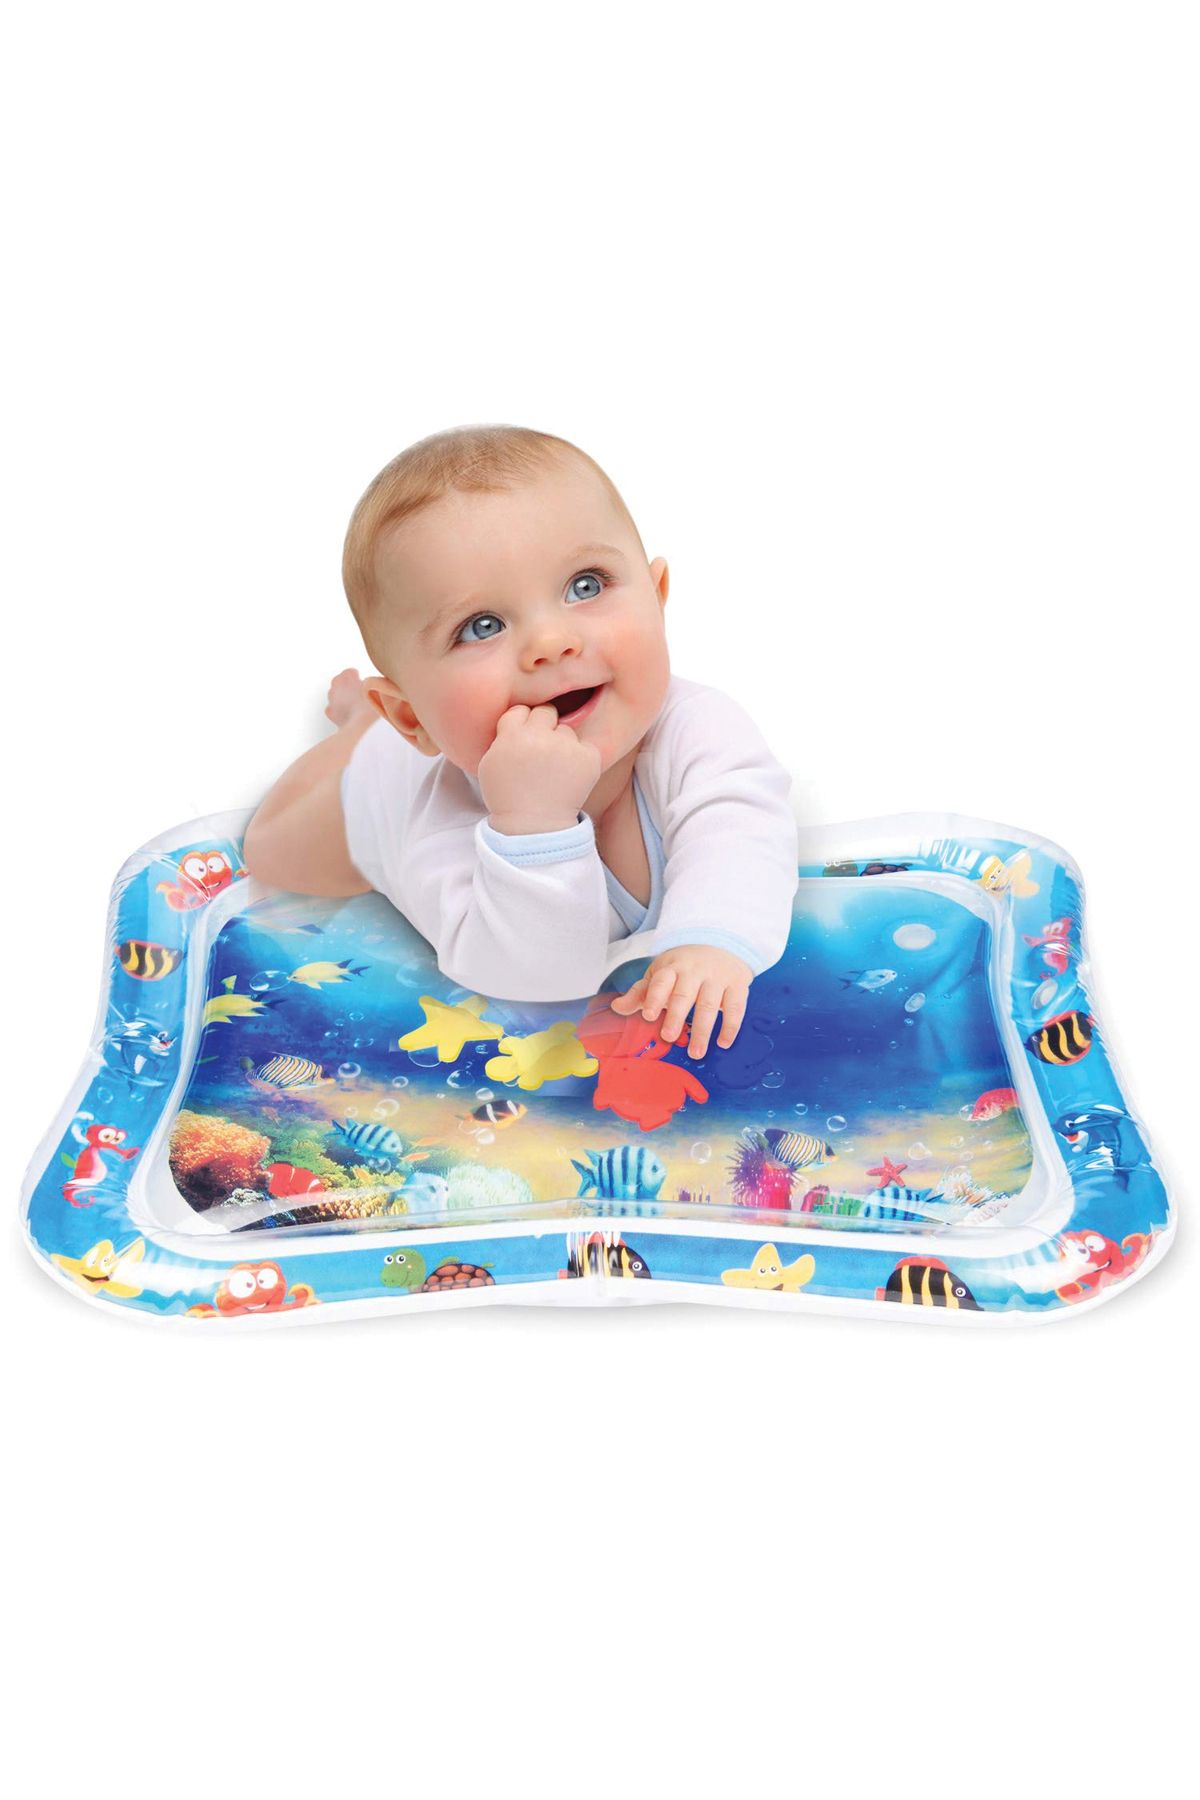 elfobaby Bebek Su Oyun Matı Tummy Time Aktivite Oyuncağı Su Havuzu (HIŞIR KİTAP HEDİYELİ)